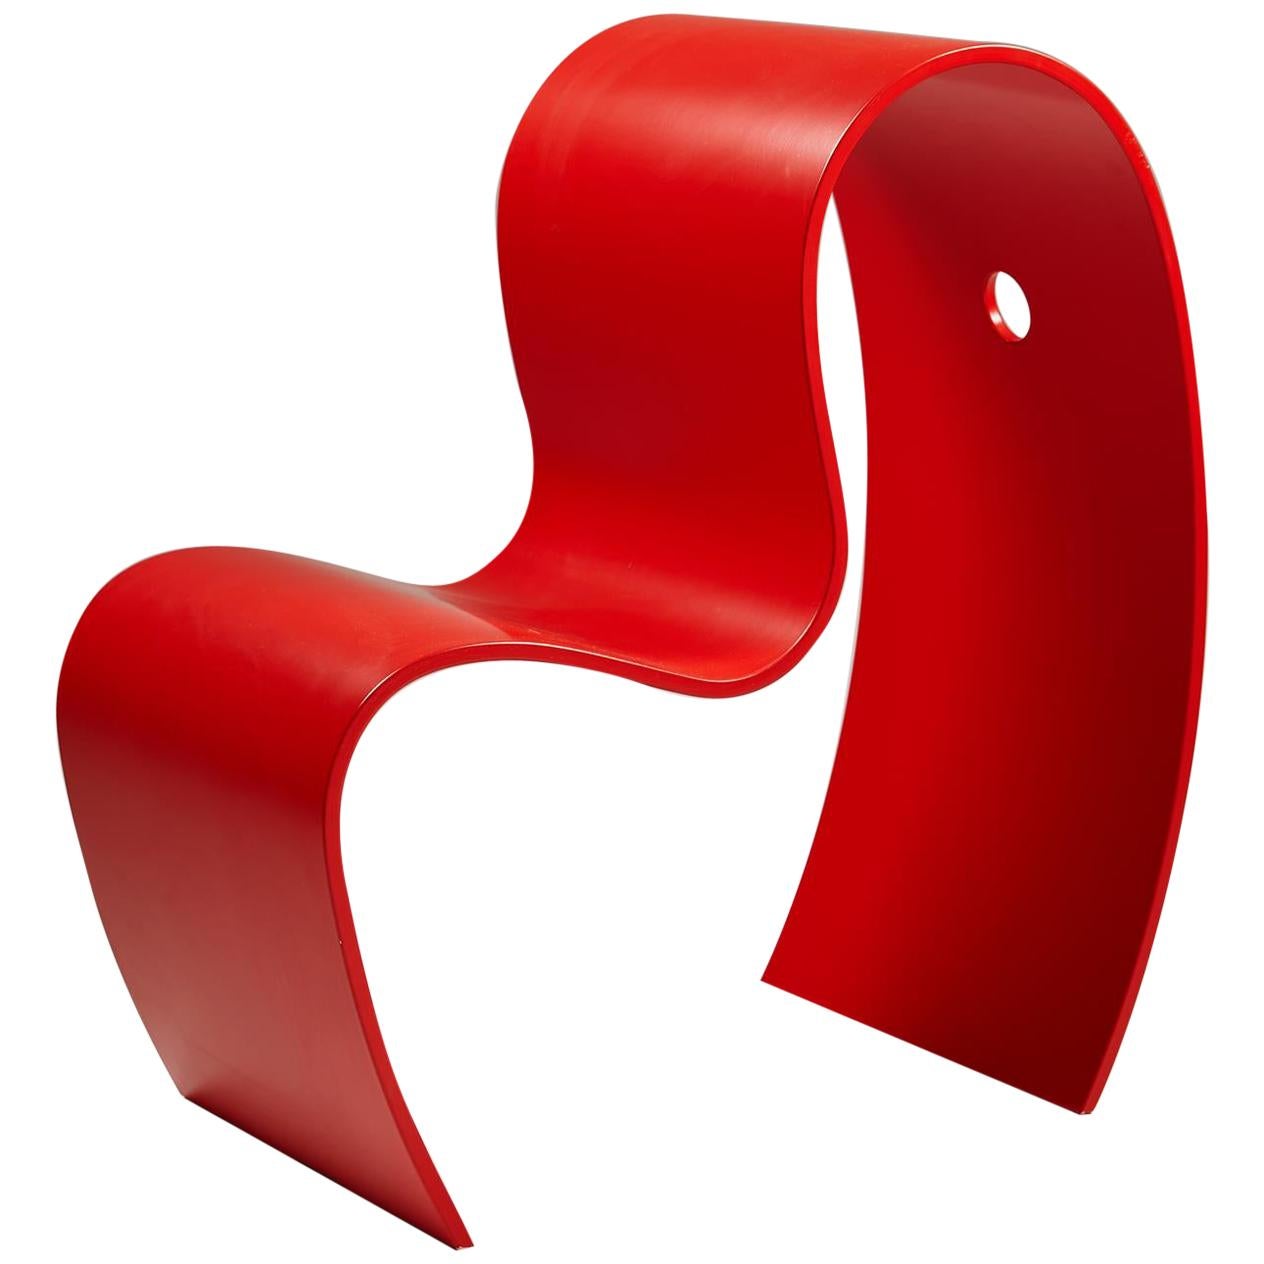 Children’s Chair, Lilla M. Designed by Caroline Schlyter, Sweden, 1990s